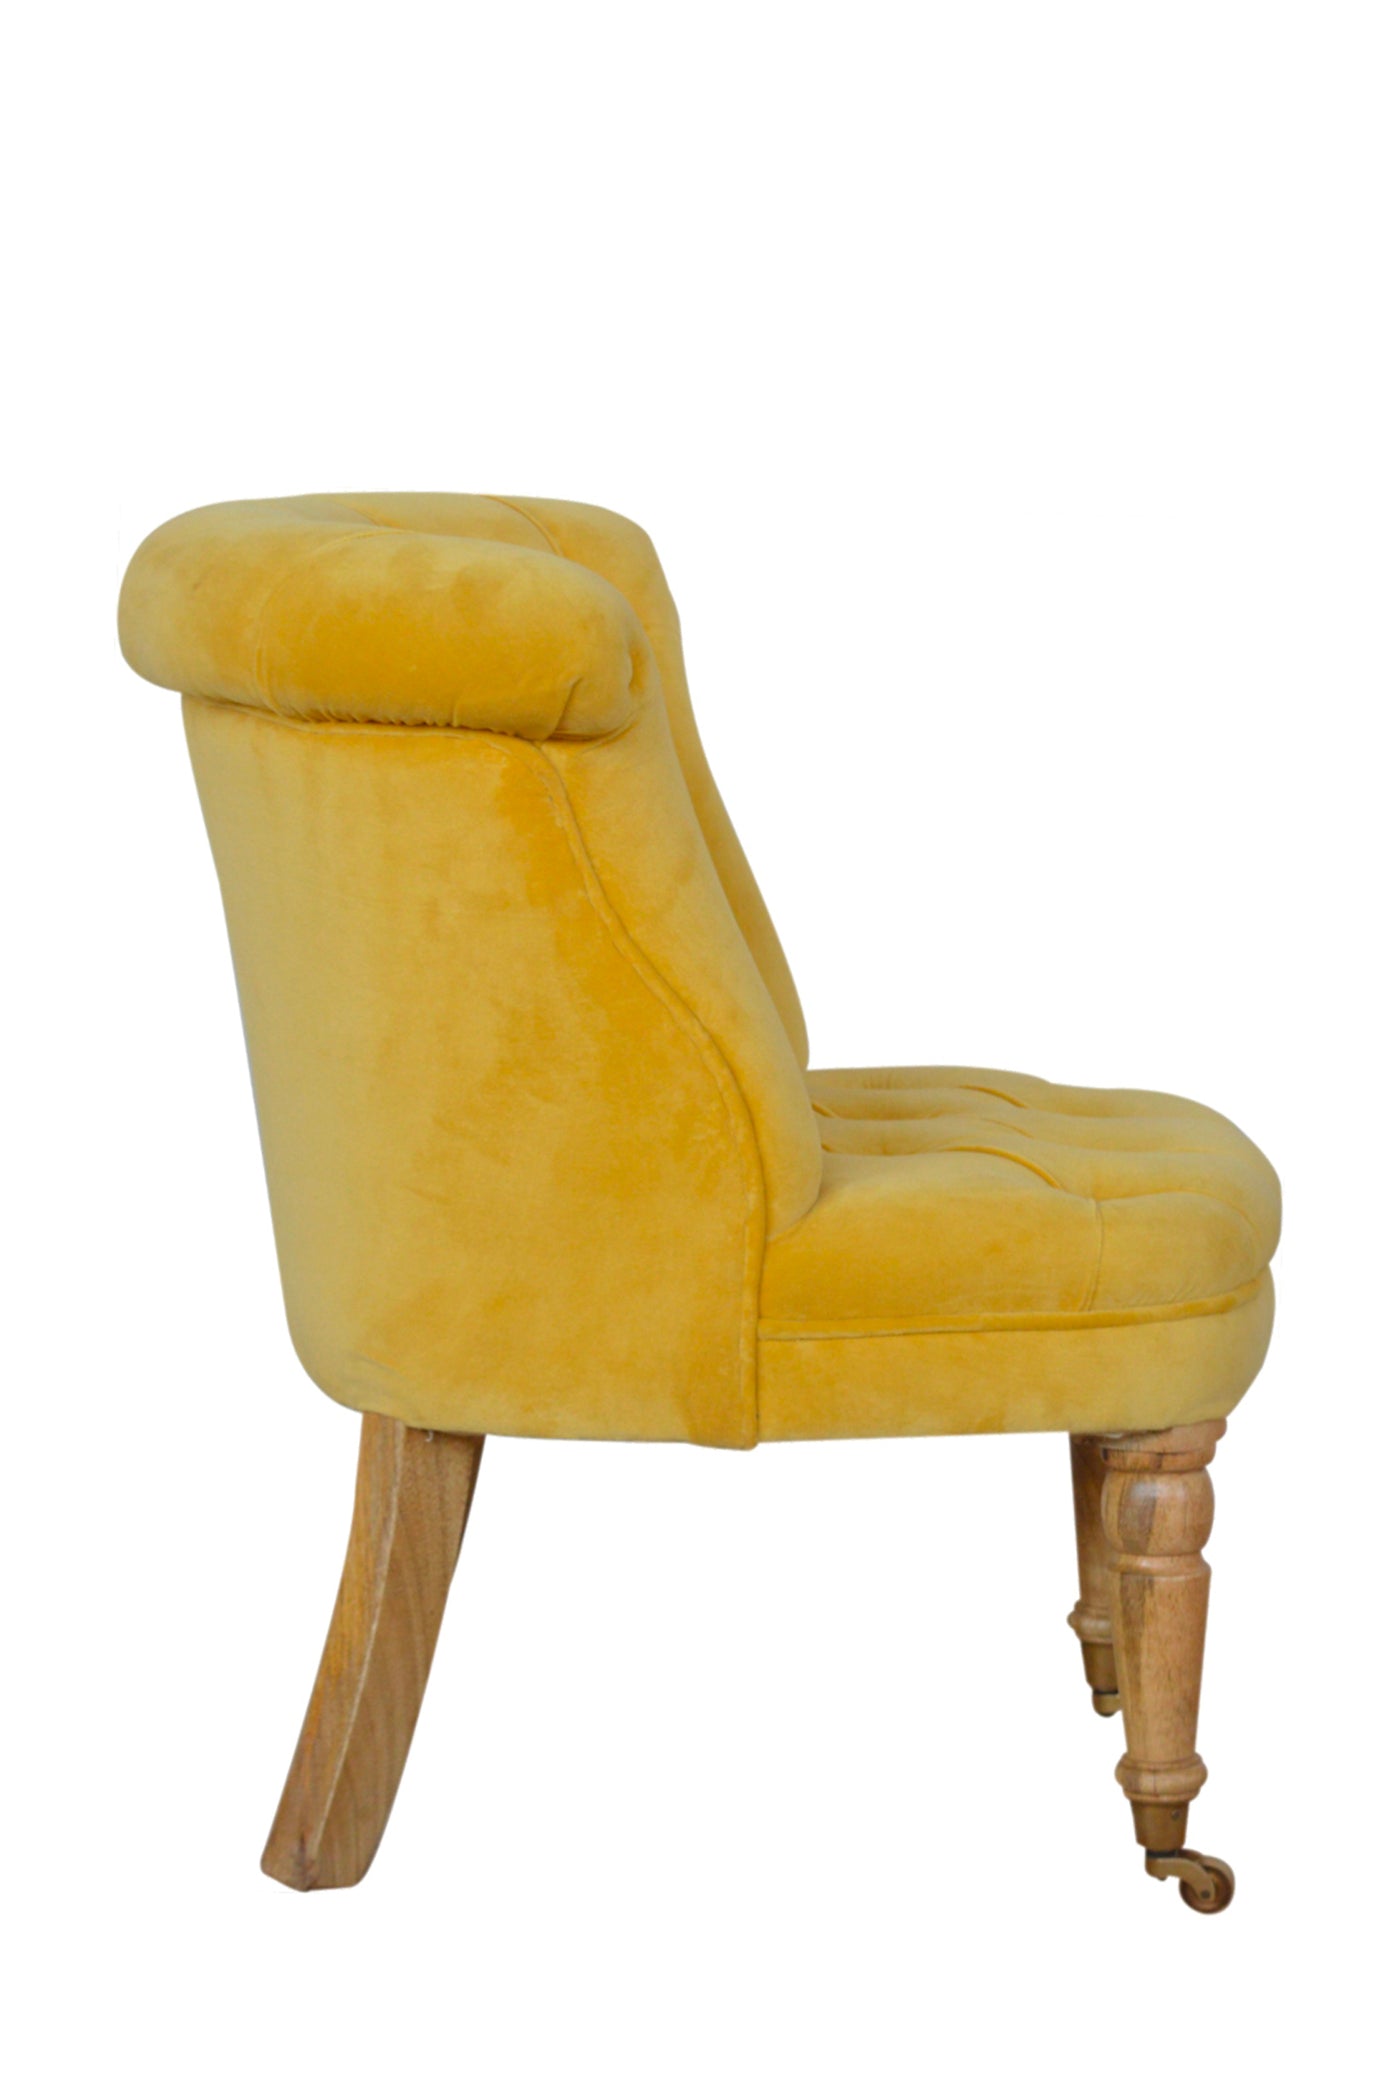 Pimlico - Chair Castors Mustard